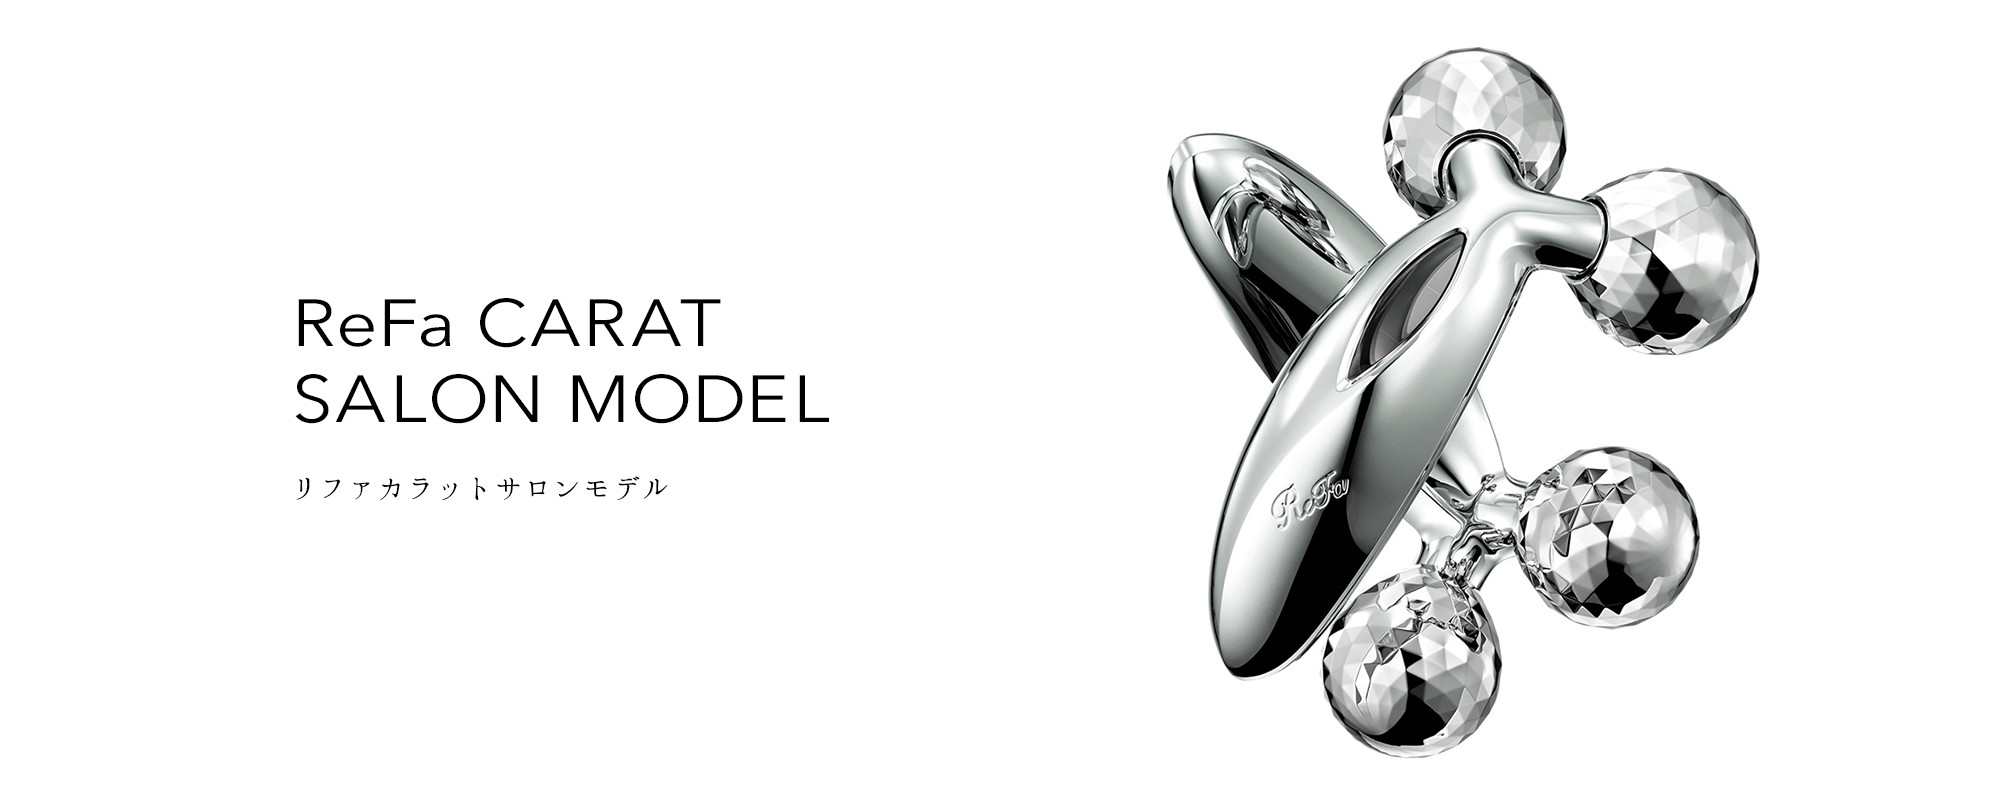 リファカラットサロンモデル - ReFa CARAT SALON MODEL | 商品情報 